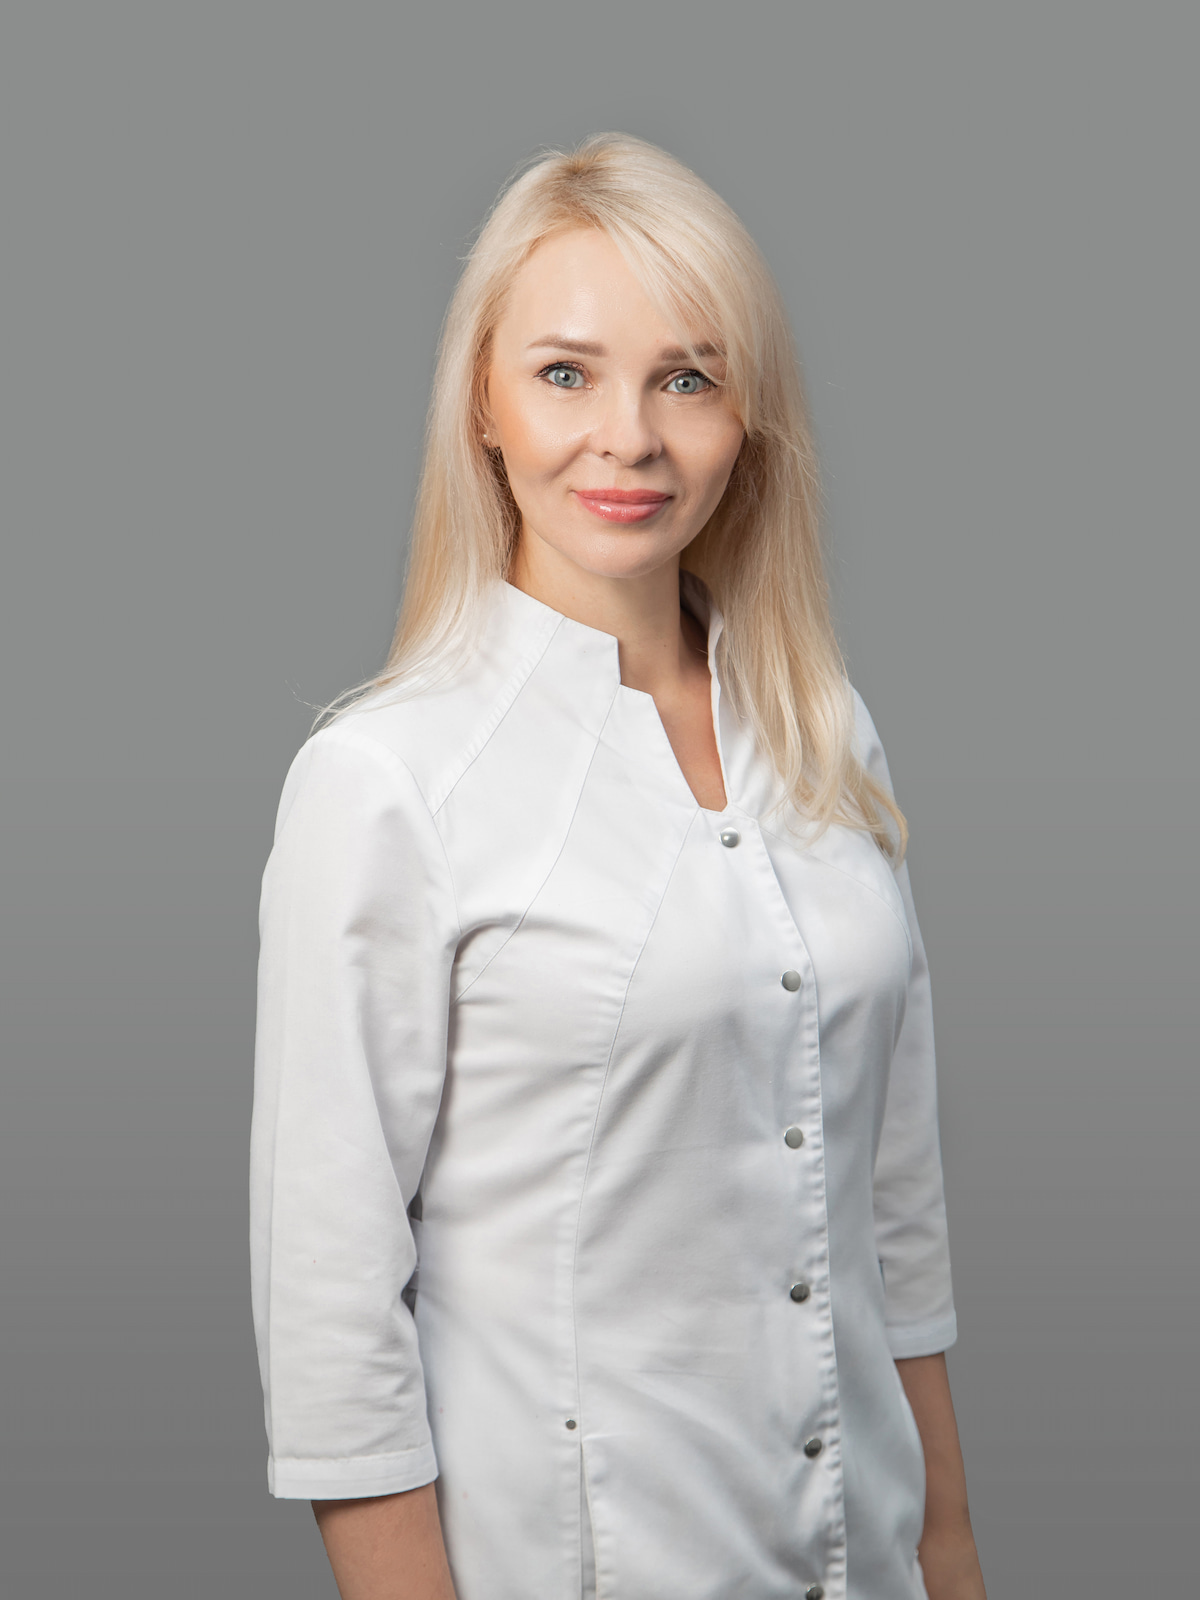 Старцева Екатерина Леонидовна